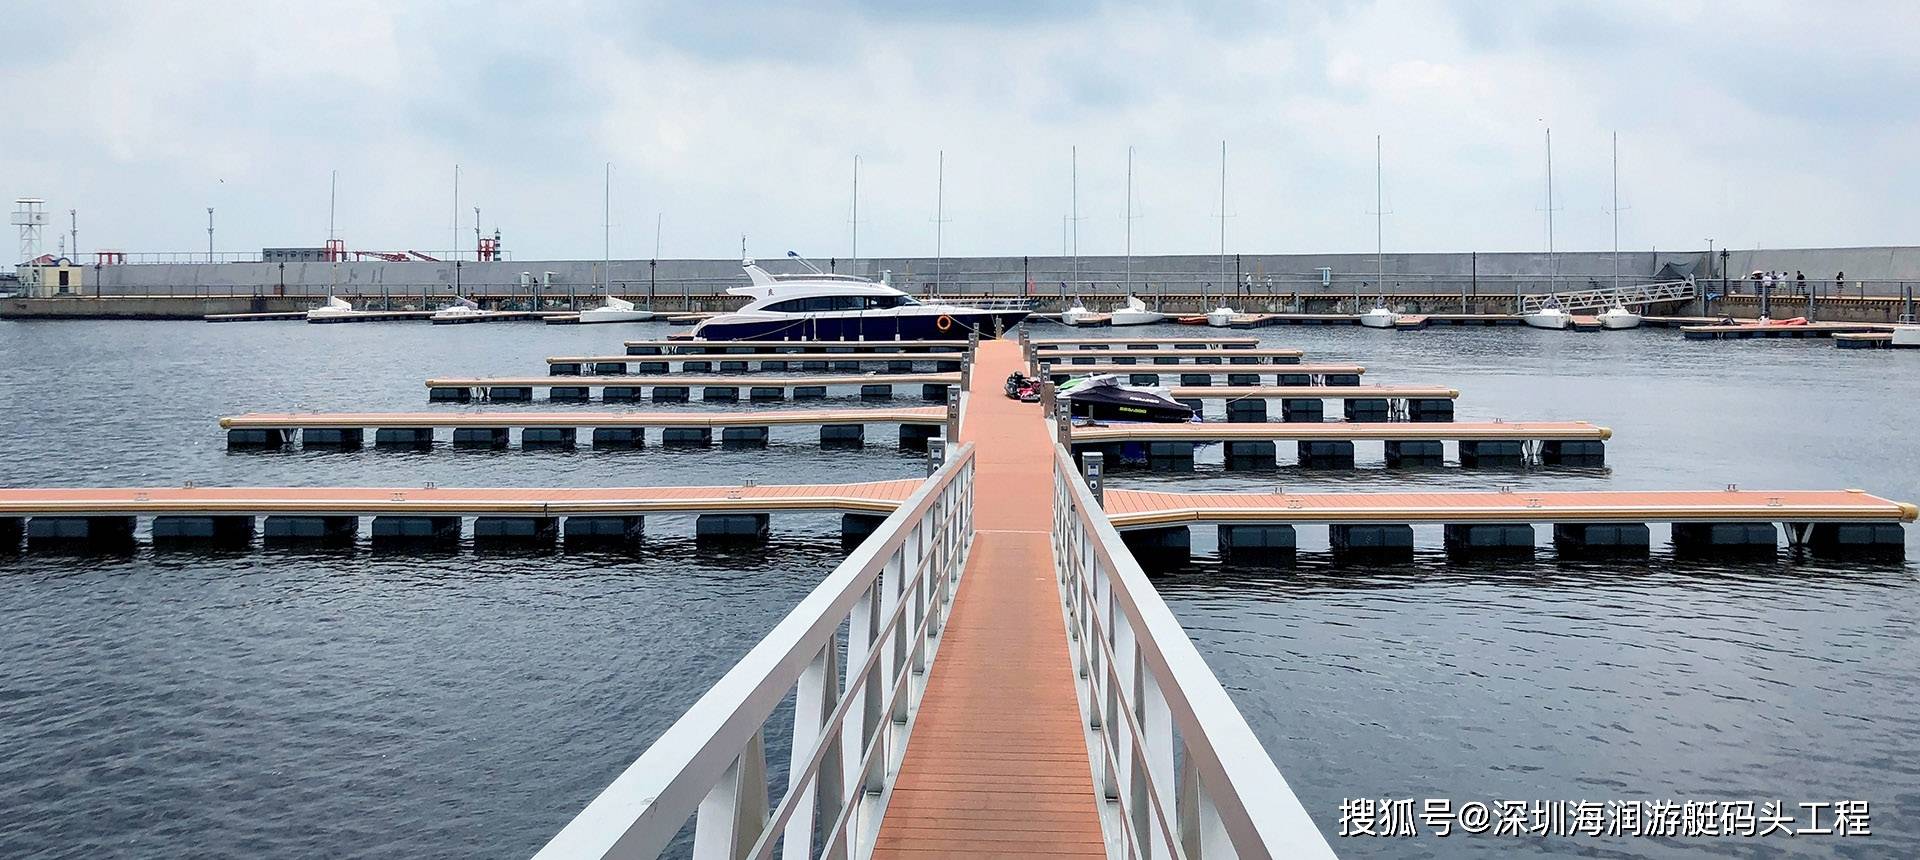 海润游艇码头:游艇码头的设计与规划